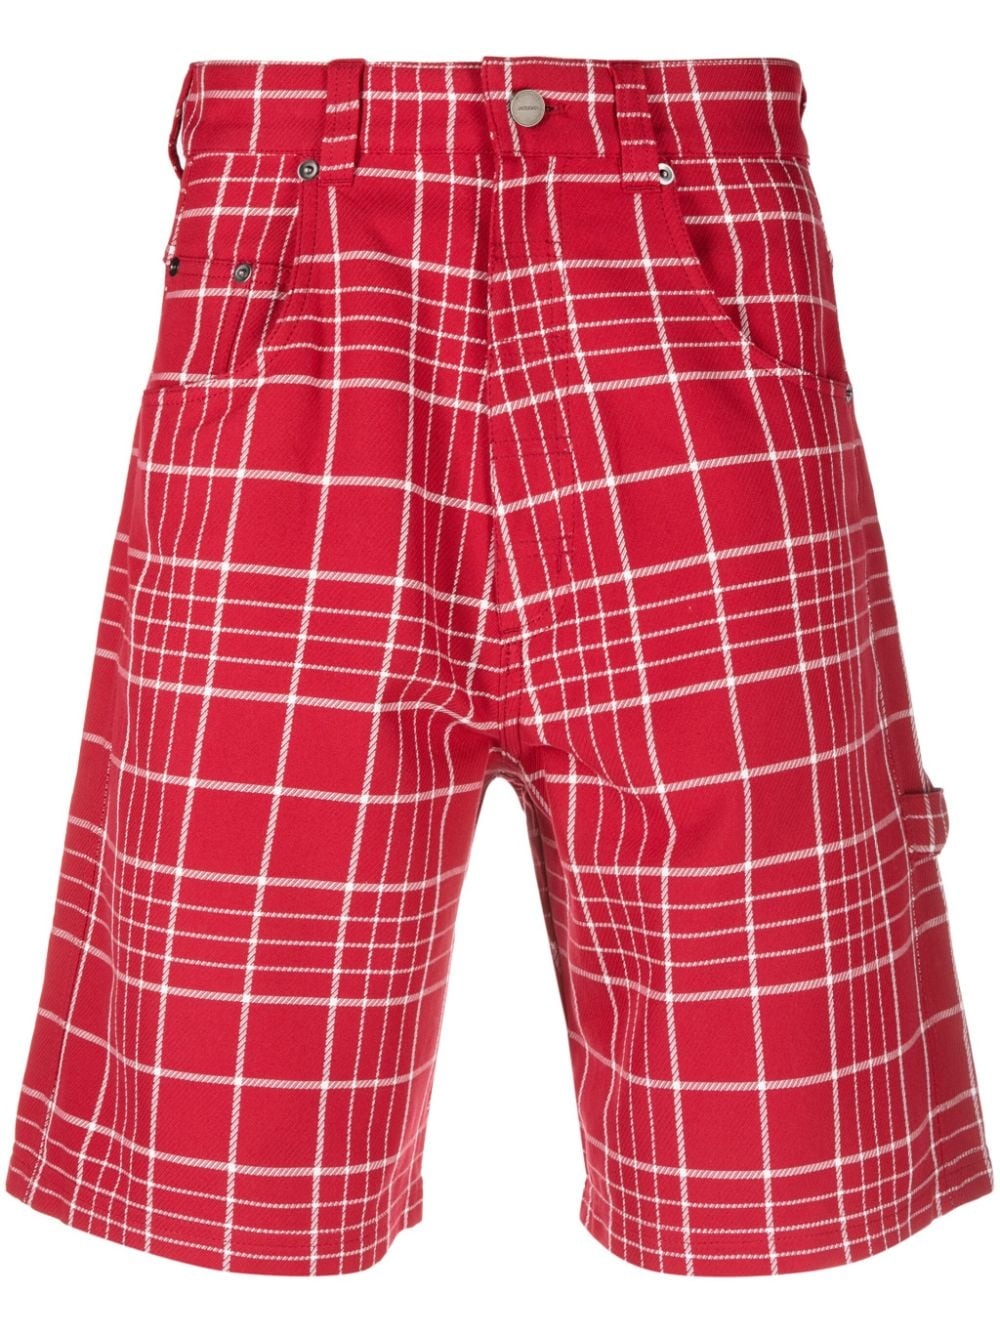 Le short Panni checked Bermuda shorts - 1